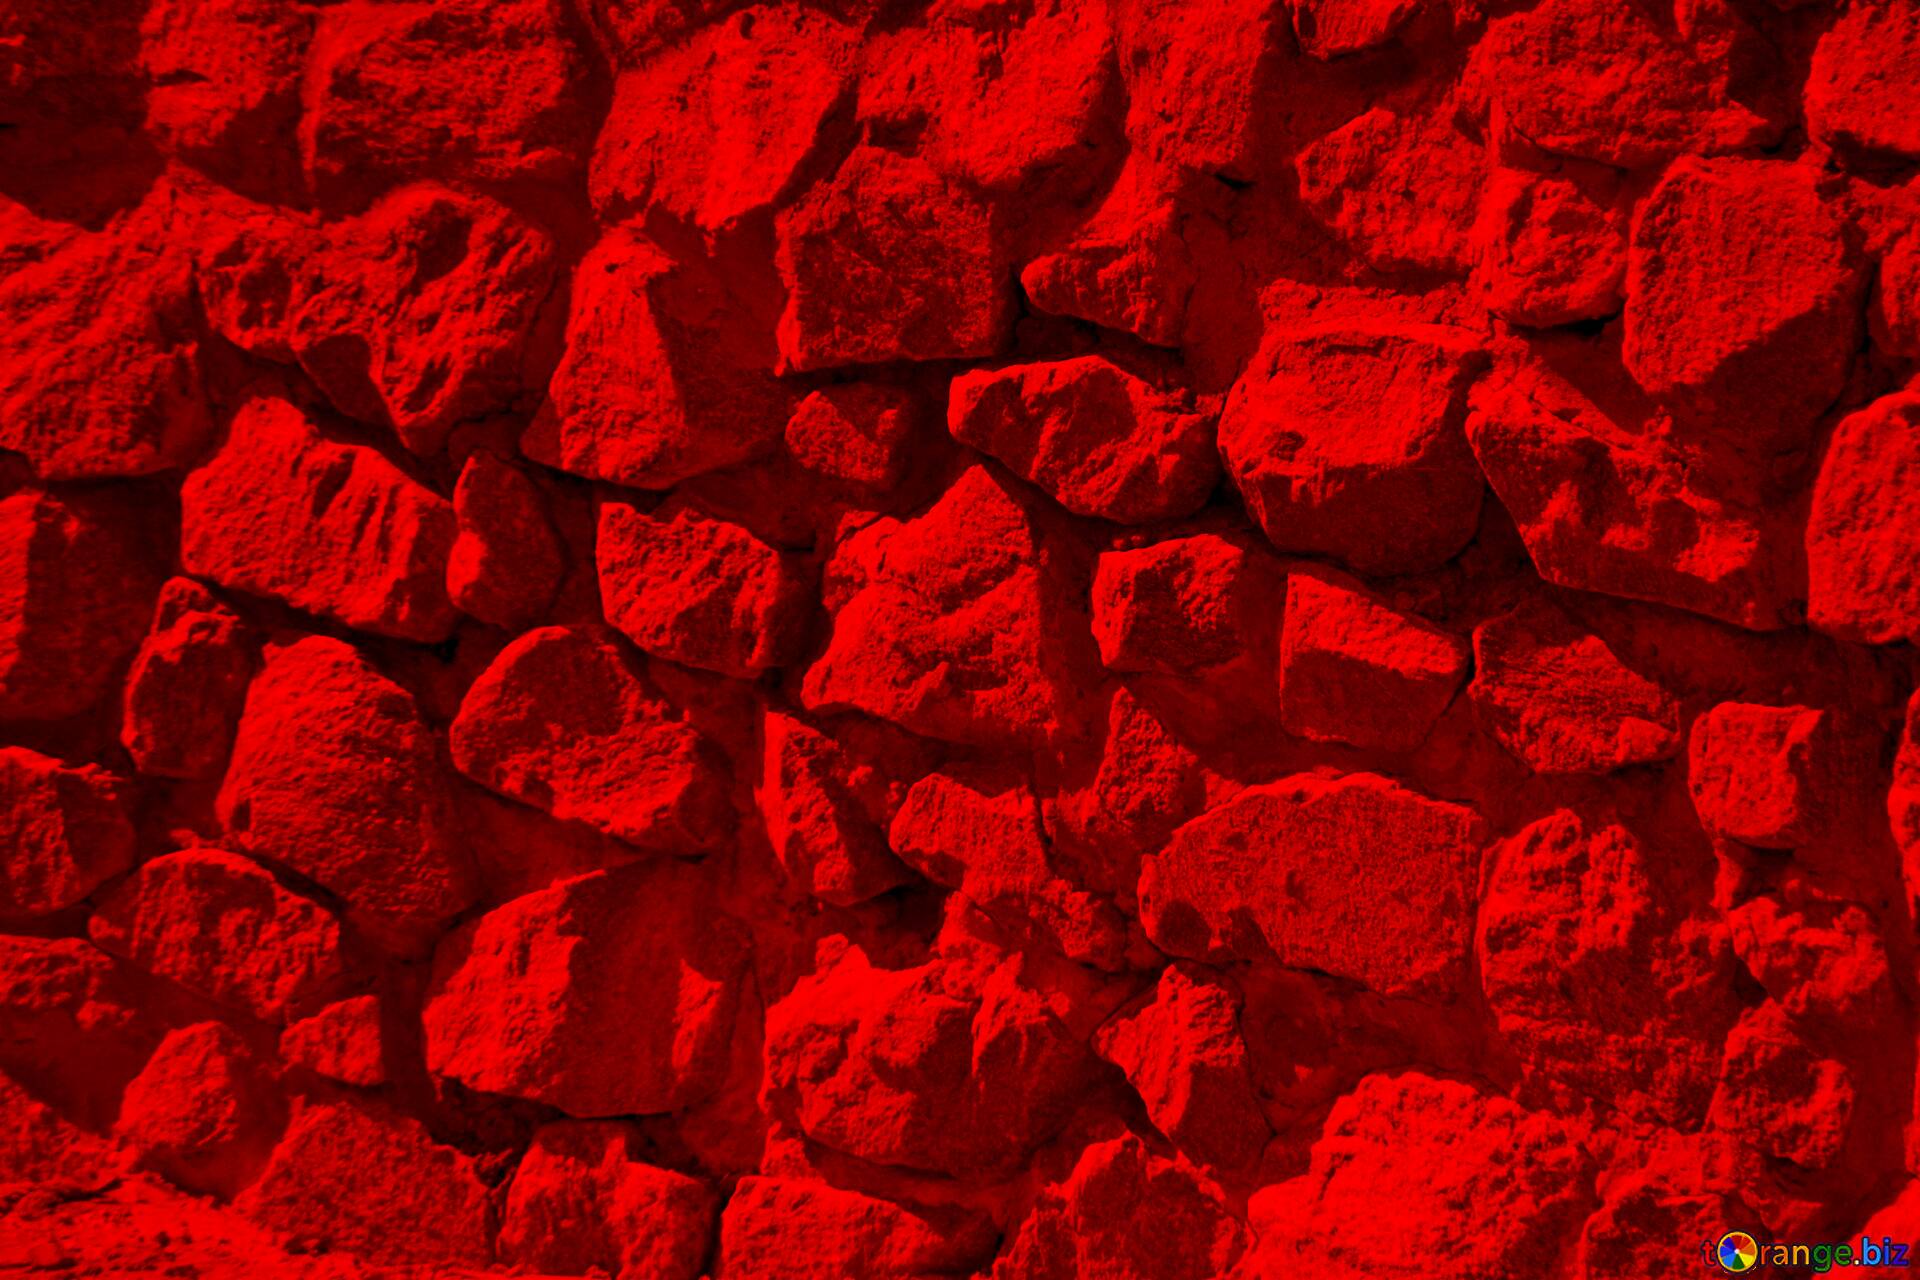 Tường đá đỏ (Red stone wall texture) Sự kiên nhẫn và tài năng của bạn sẽ được thể hiện tốt nhất thông qua thiết kế đẳng cấp và tinh tế. Những tấm ảnh tường đá đỏ sẵn sàng làm tăng thêm giá trị cho các thiết kế của bạn. Nhấp chuột để khám phá loại hình ảnh này và chắc chắn rằng bạn sẽ không hối tiếc vì lựa chọn của mình.